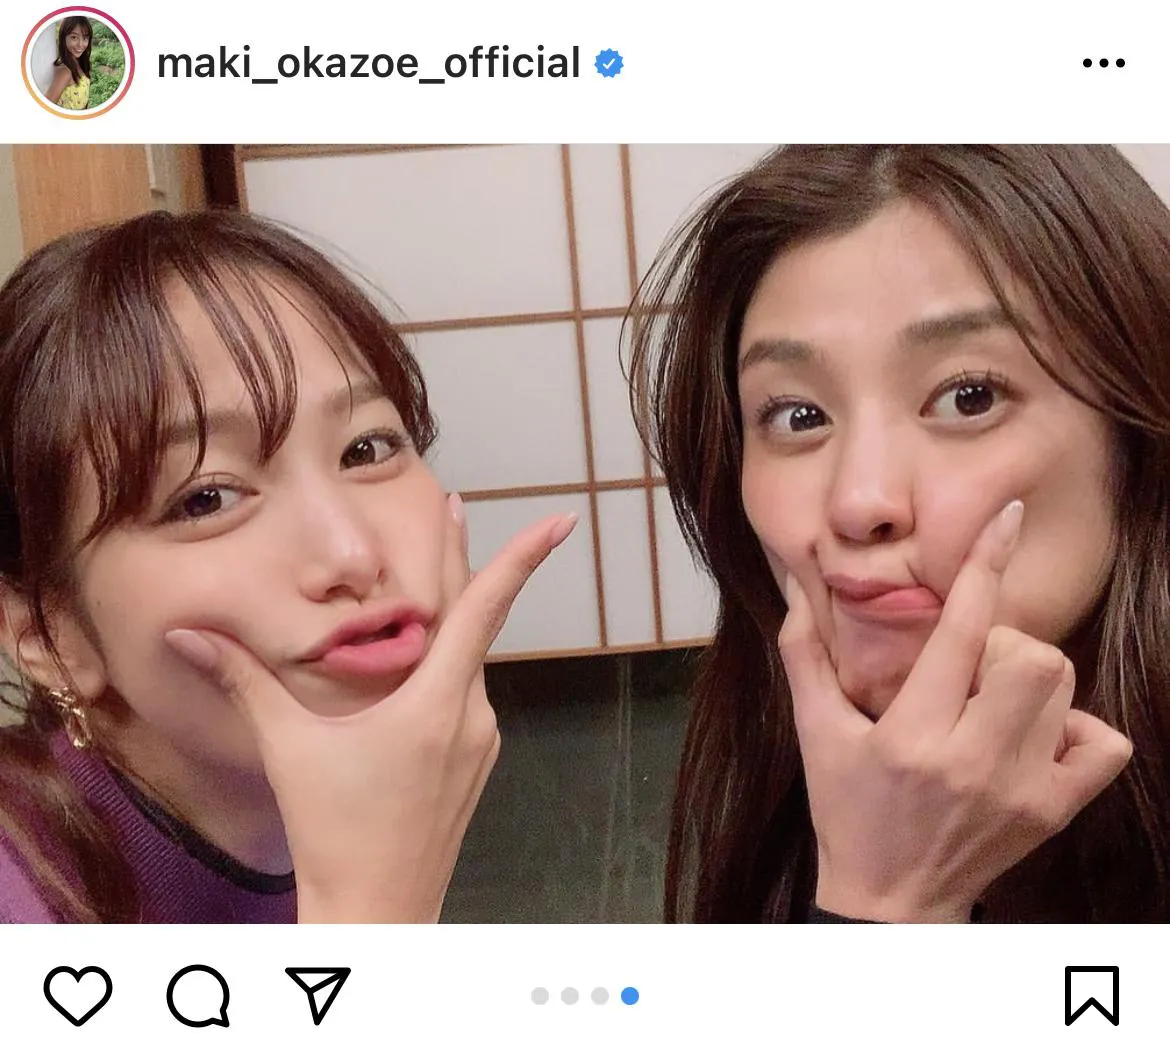 ※画像は岡副麻希(maki_okazoe_official)公式Instagramのスクリーンショット